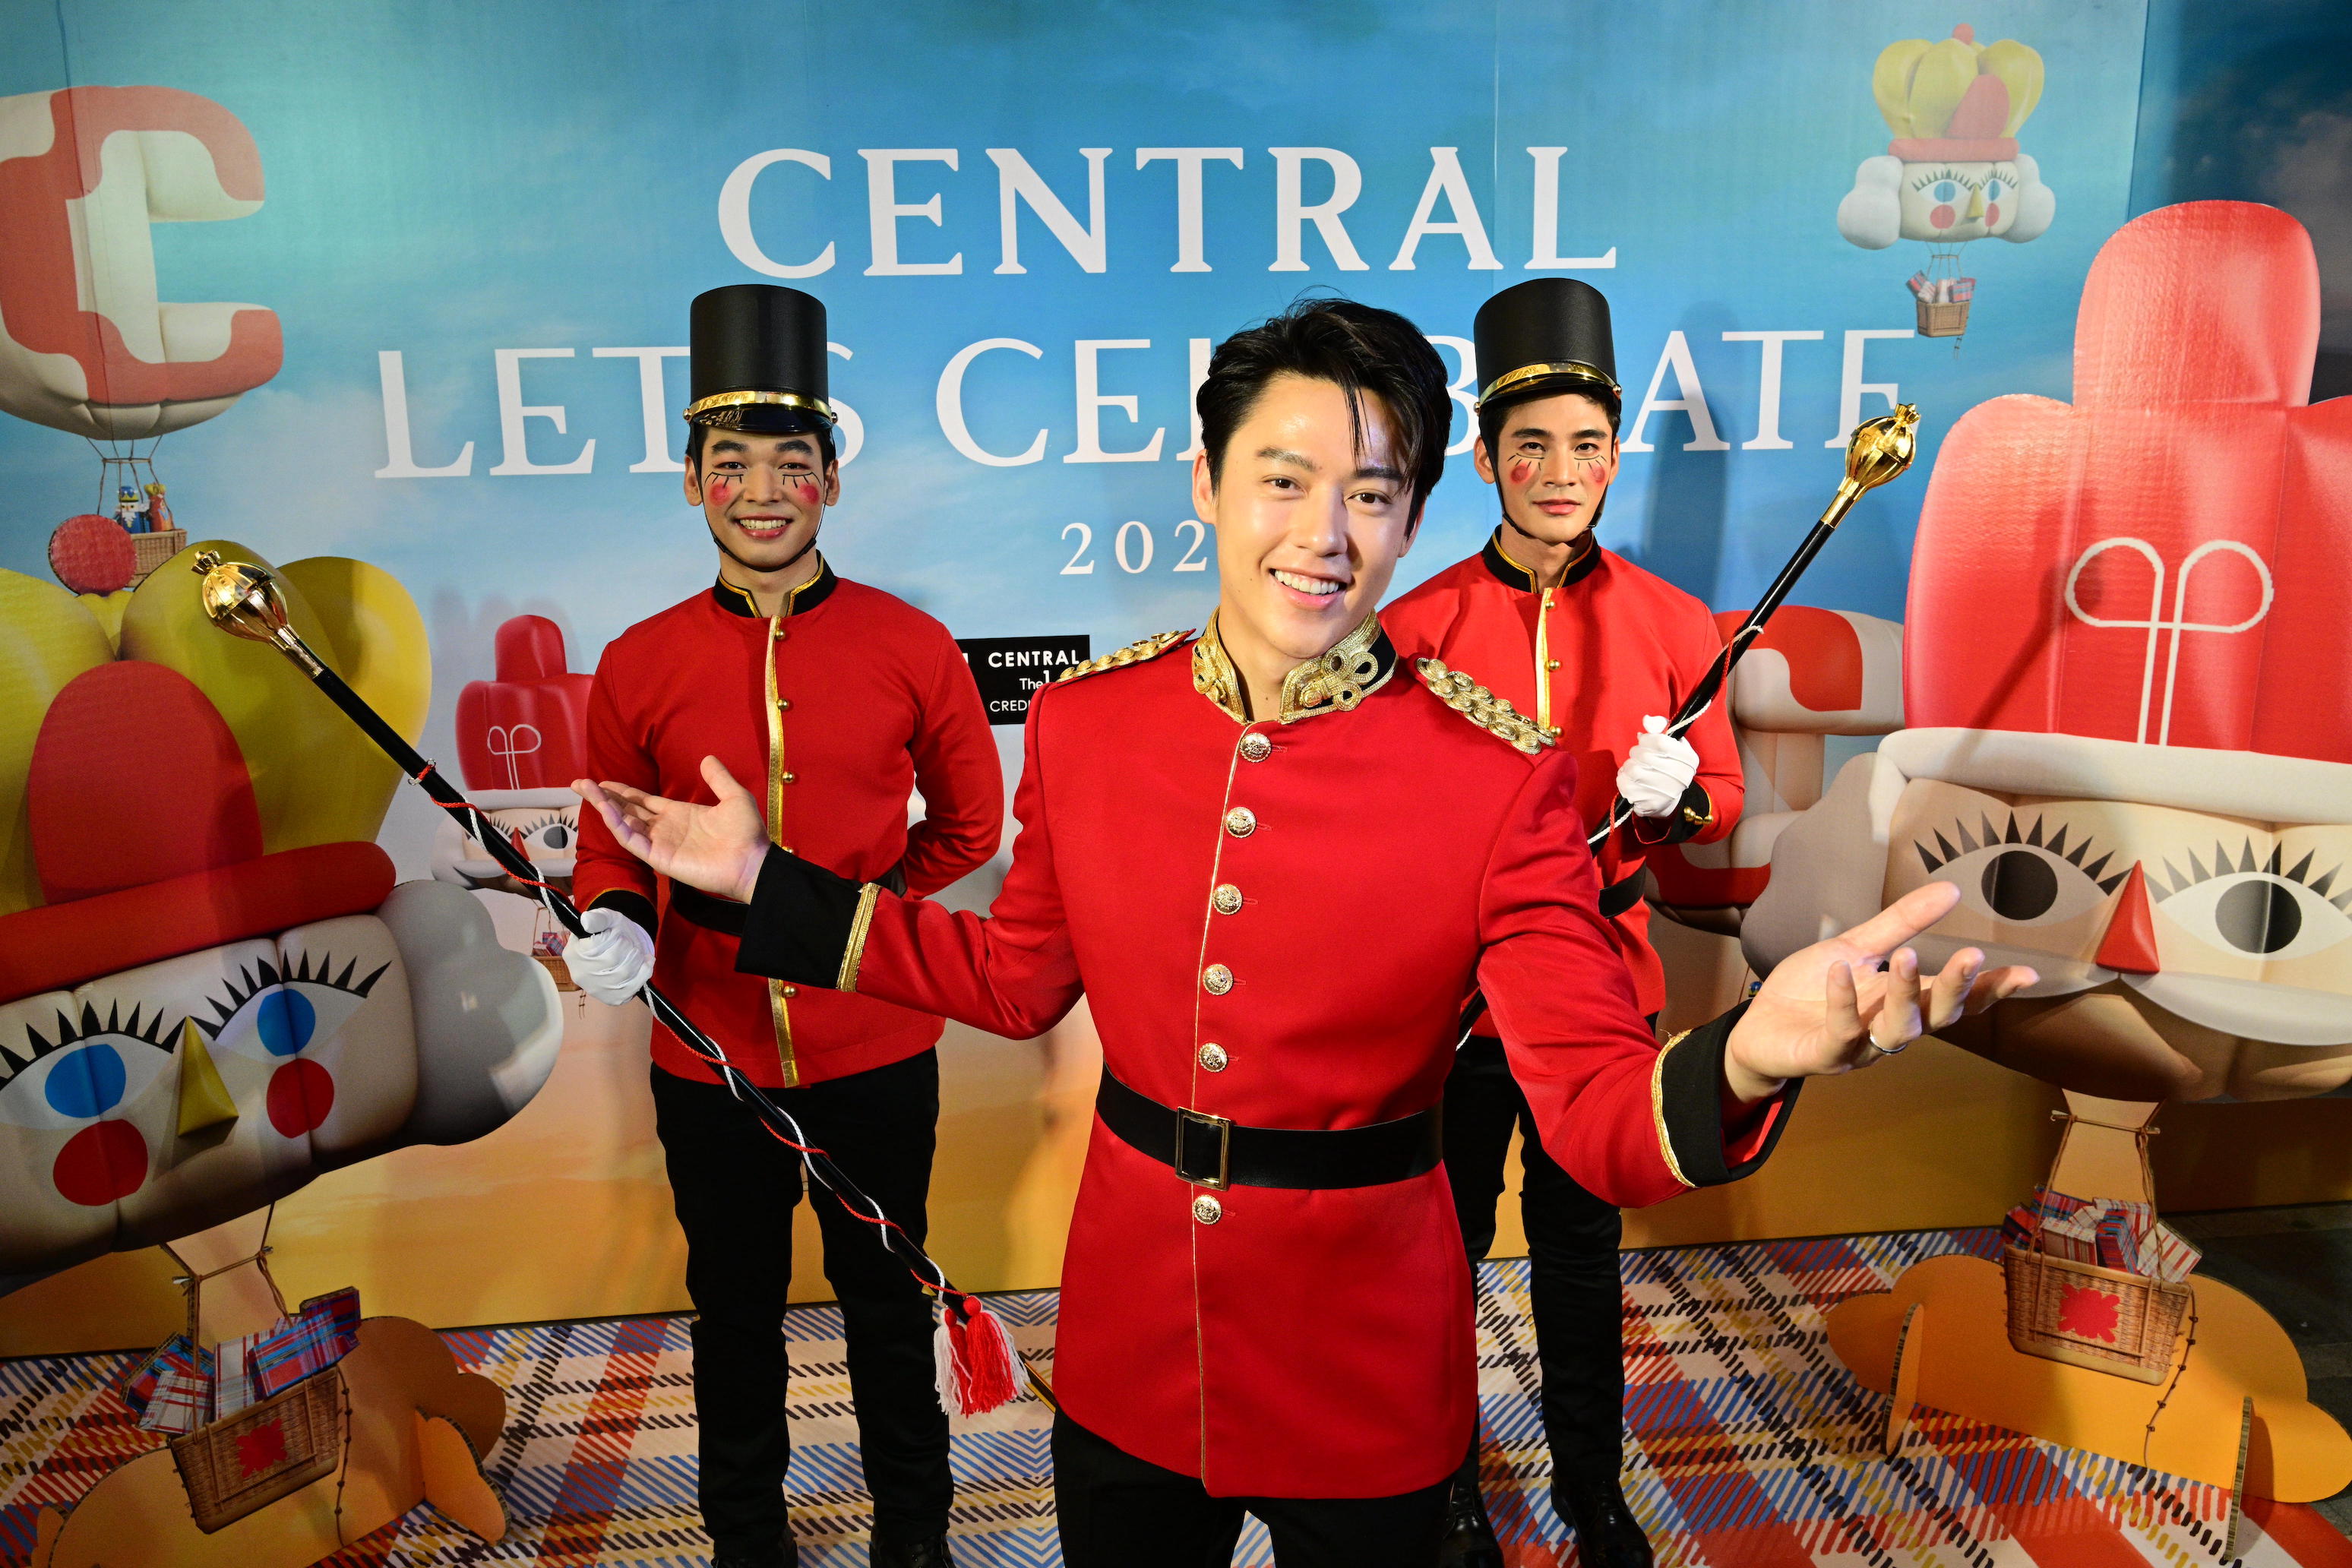  “ห้างเซ็นทรัล” ยกบรรยากาศคริสต์มาสส่งตรงจากลอนดอนมาไว้ที่เมืองไทย  ชวนฉลองช่วงเวลาแห่งความสุขกับ “CENTRAL LET’S CELEBRATE 2024”  ตื่นตากับแลนด์มาร์กบอลลูนยักษ์ จัดเต็มกิจกรรมสุดสนุก เพื่อมอบประสบการณ์เฟสทีฟที่ดีที่สุด